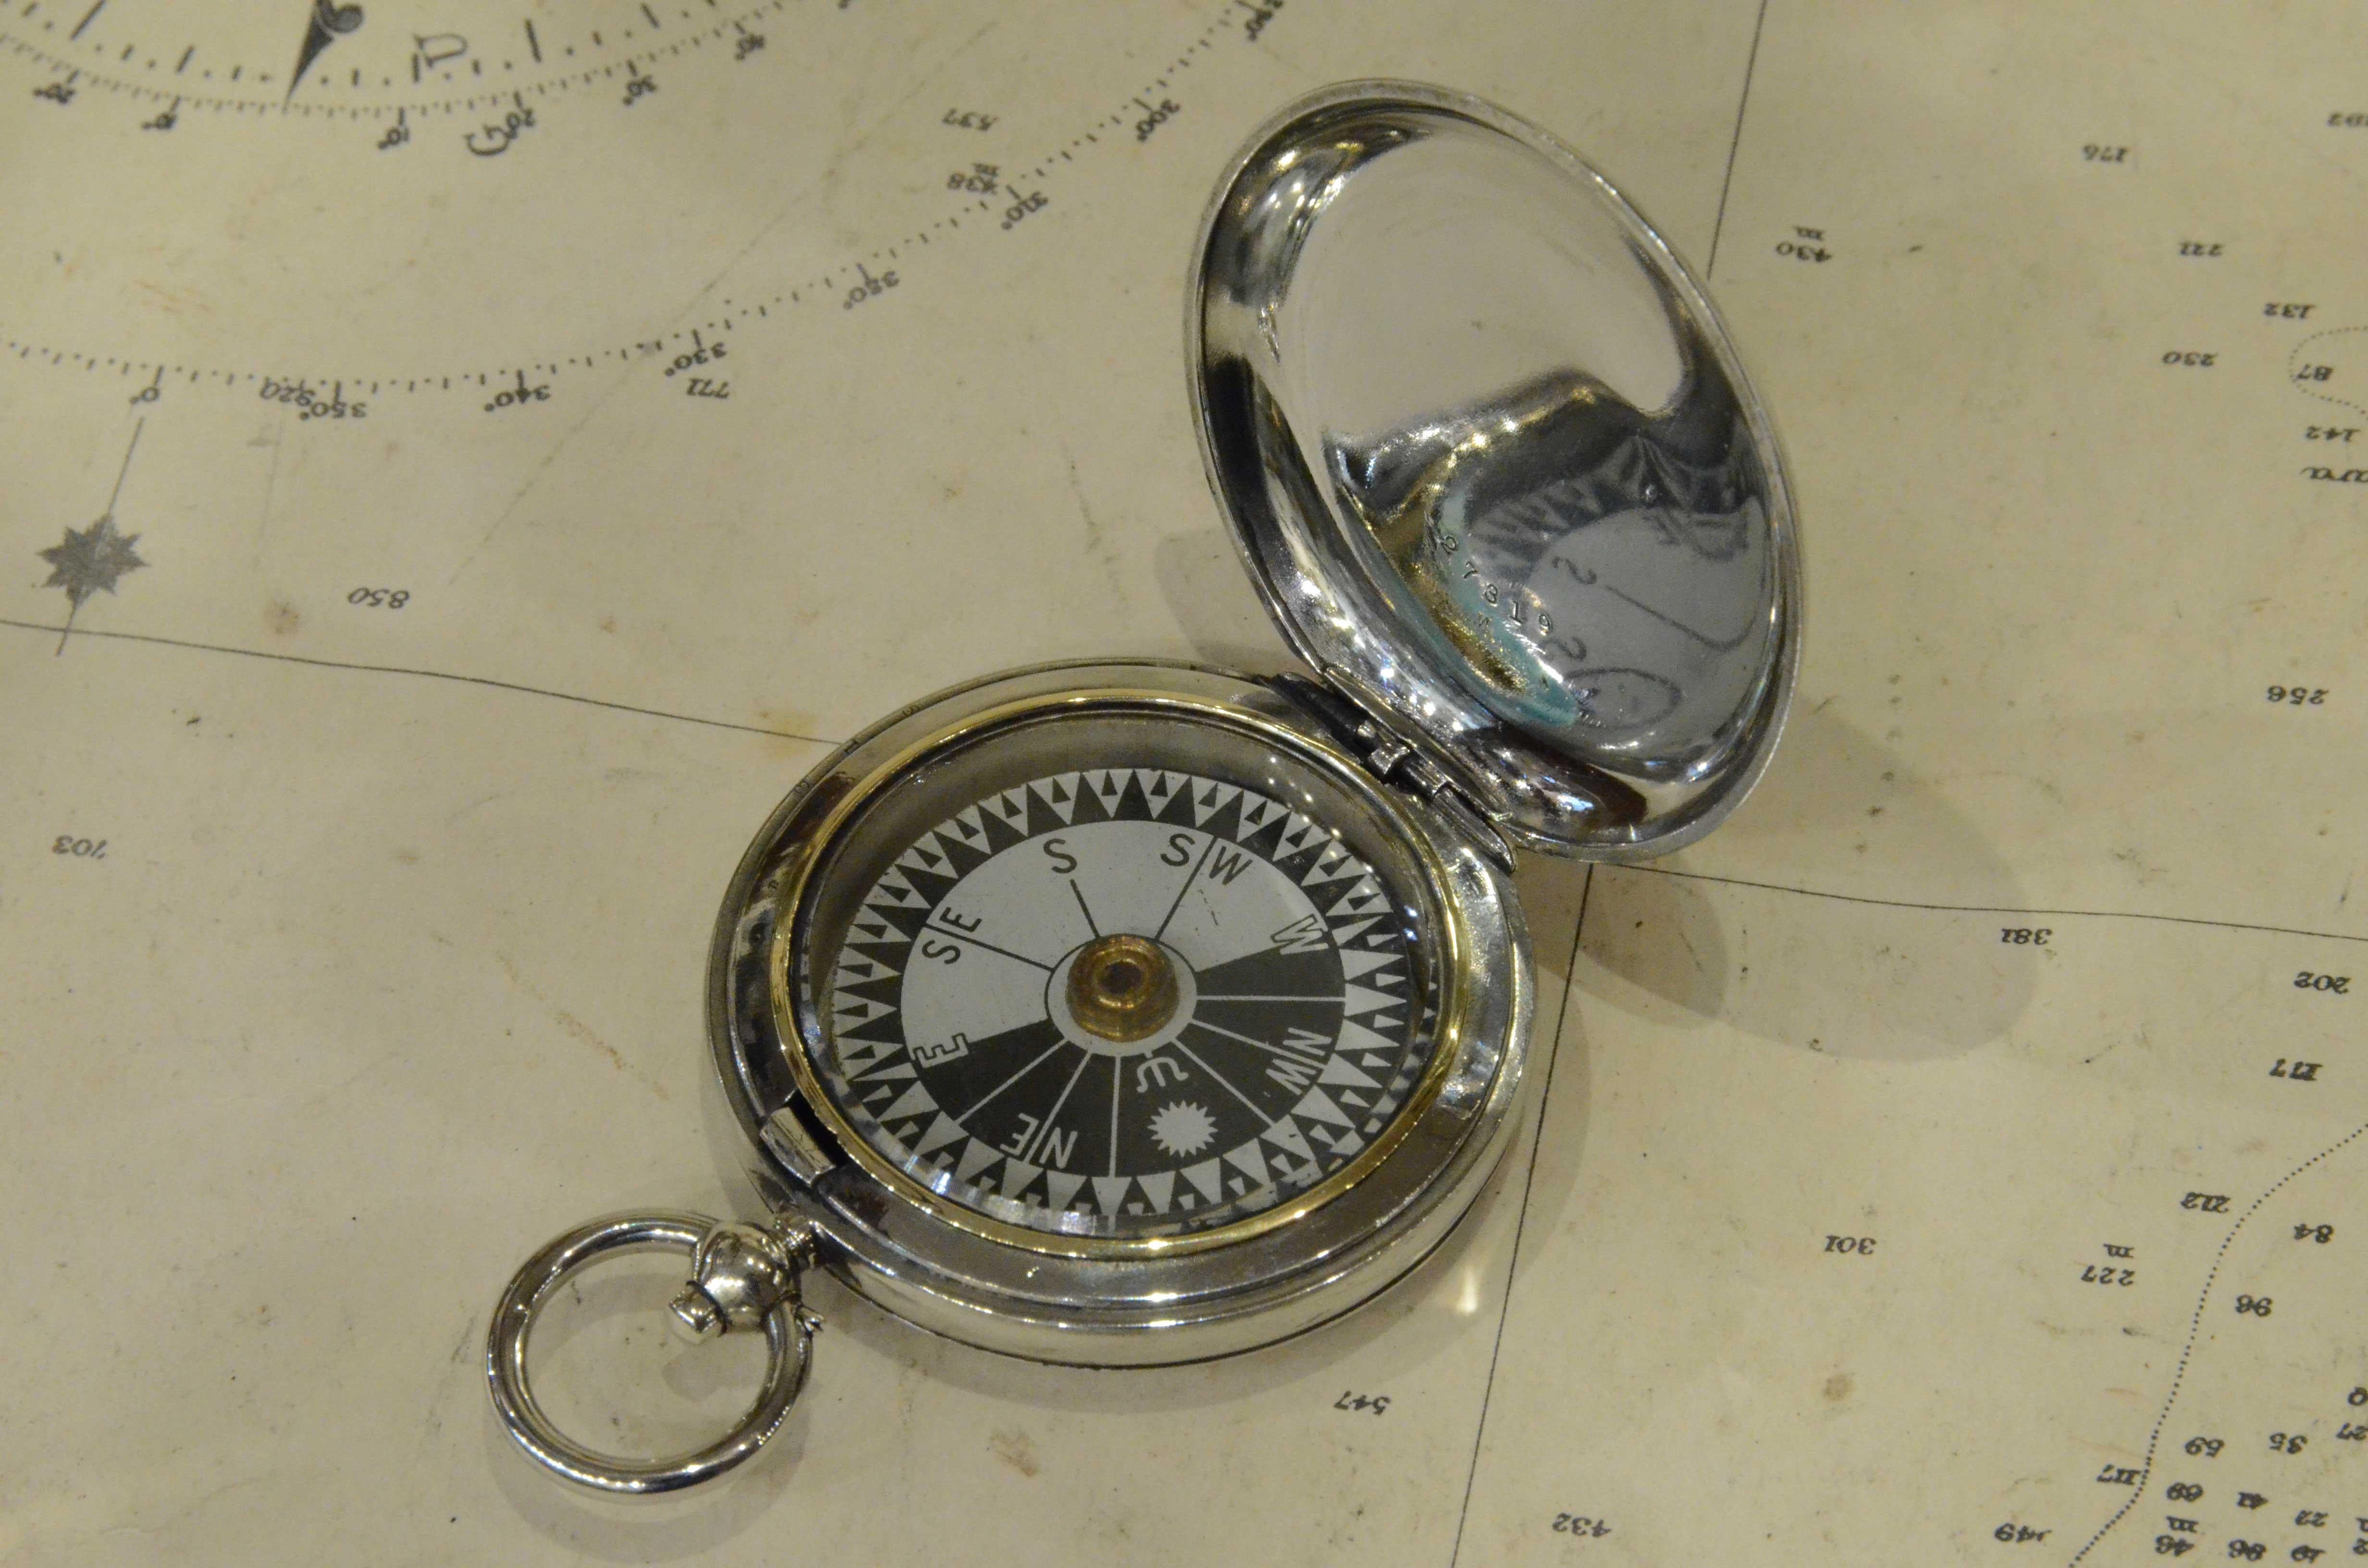 Taschenkompass für die RAF-Offiziere, signiert F. Darton & Co London V n. 77824 1916 aus Messing-Chrom in Form einer Taschenuhr. Der Kompass hat einen Schnappdeckel mit Entriegelungsknopf im Inneren des Rings. 
Zwölf-Winde-Kompass-Karte. Sehr guter